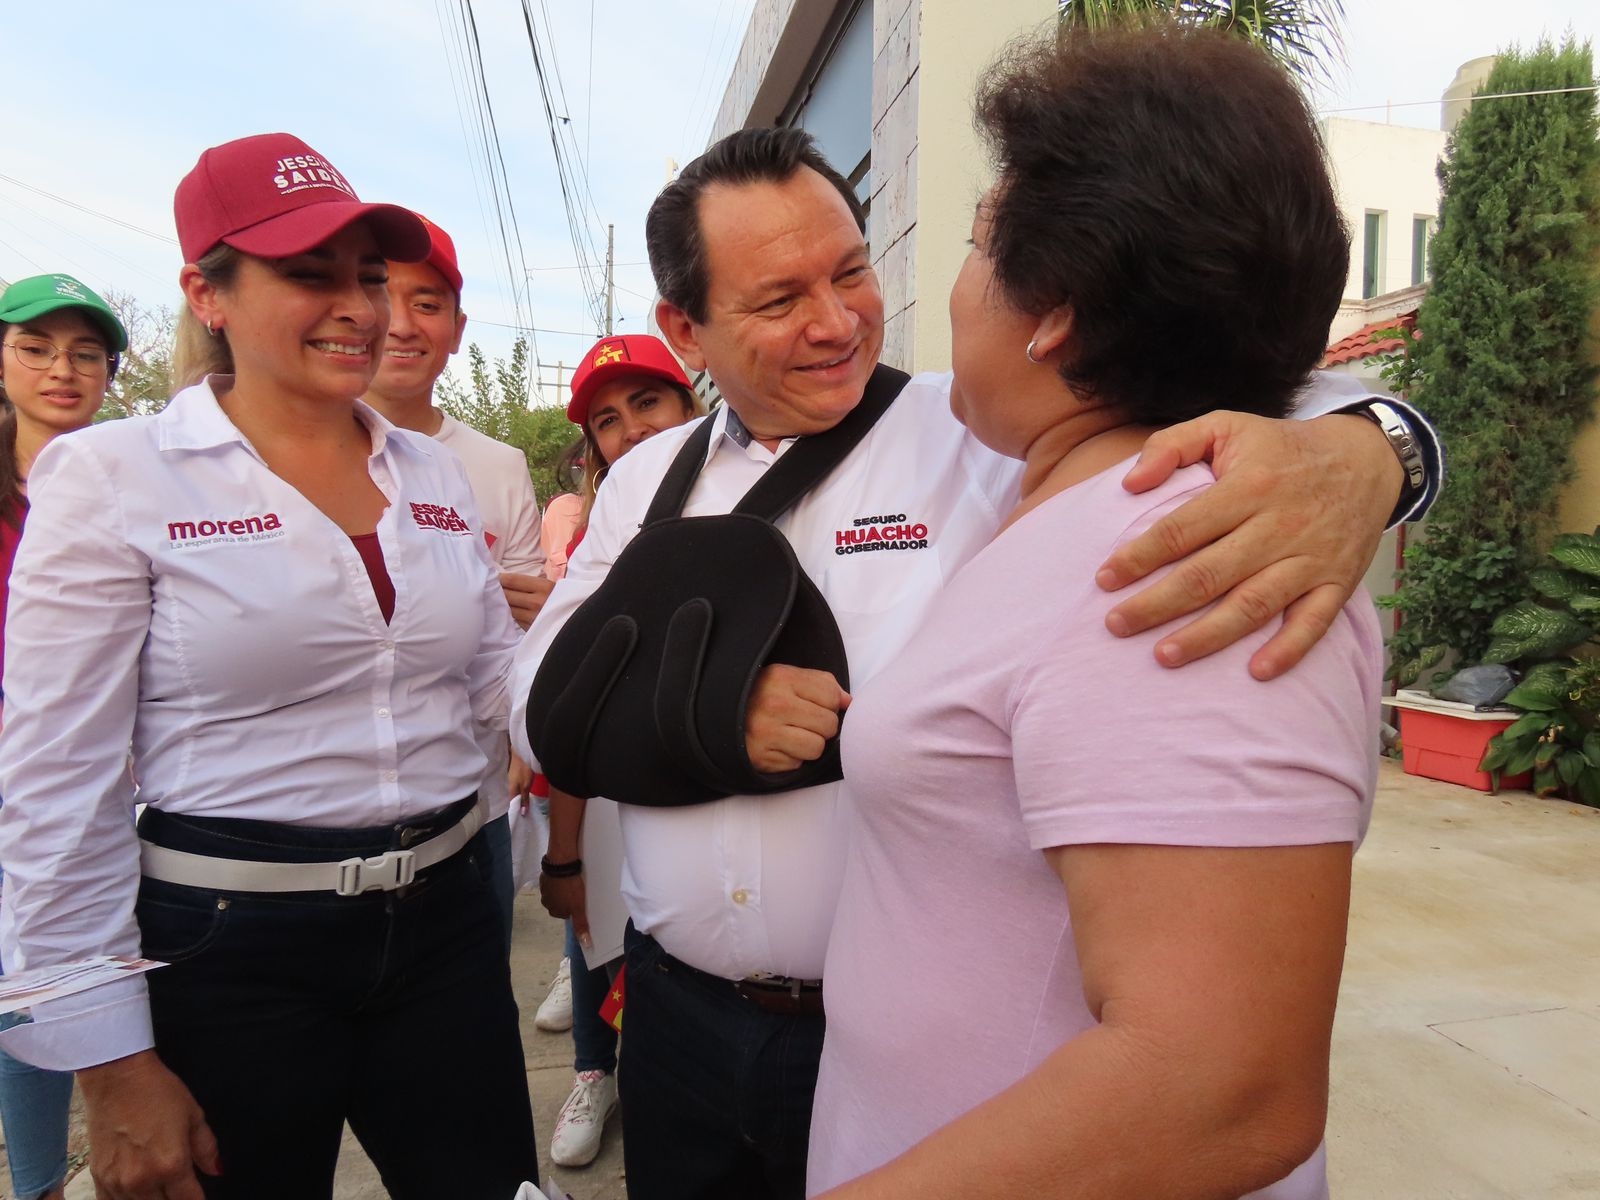 El candidato a la gubernatura de Yucatán, "Huacho" Diaz Mena, escucha a los vecinos de la zona